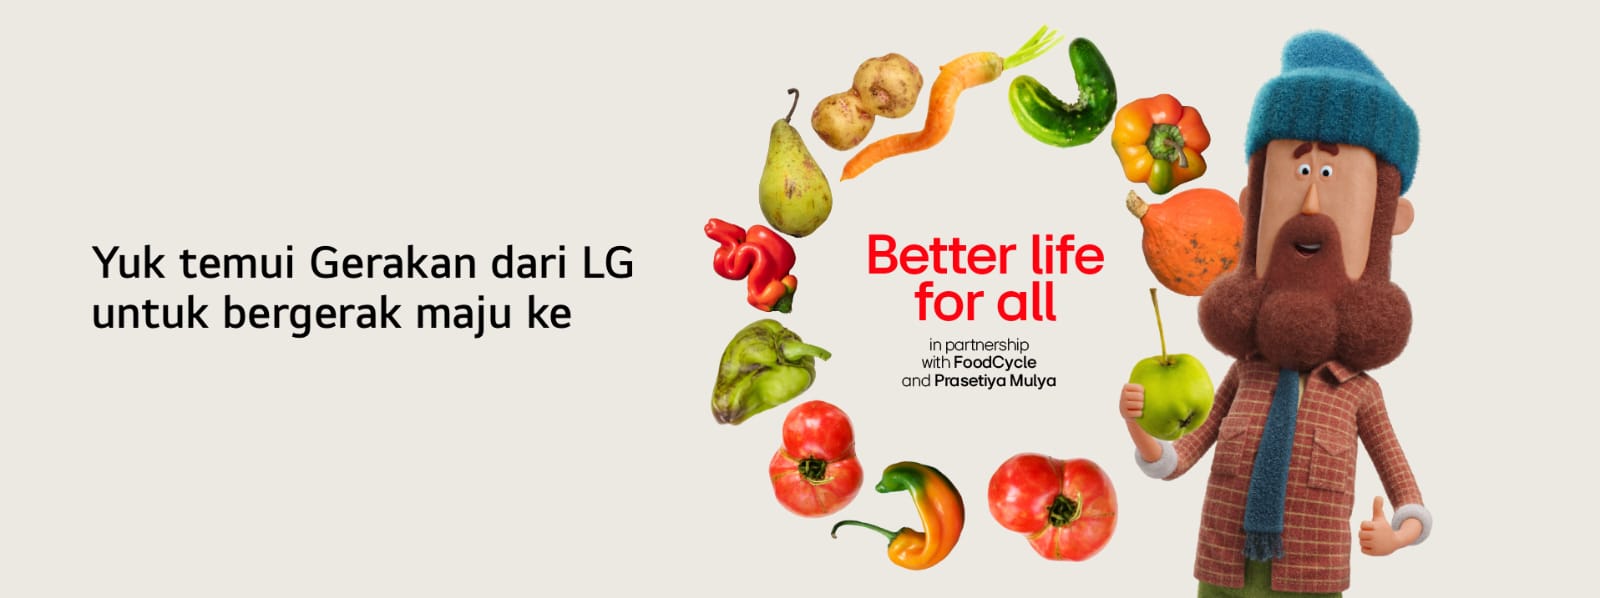 Mari Gabung ke Gerakan “Better life for all” bersama LG Agar Lebih Menghargai Pangan!